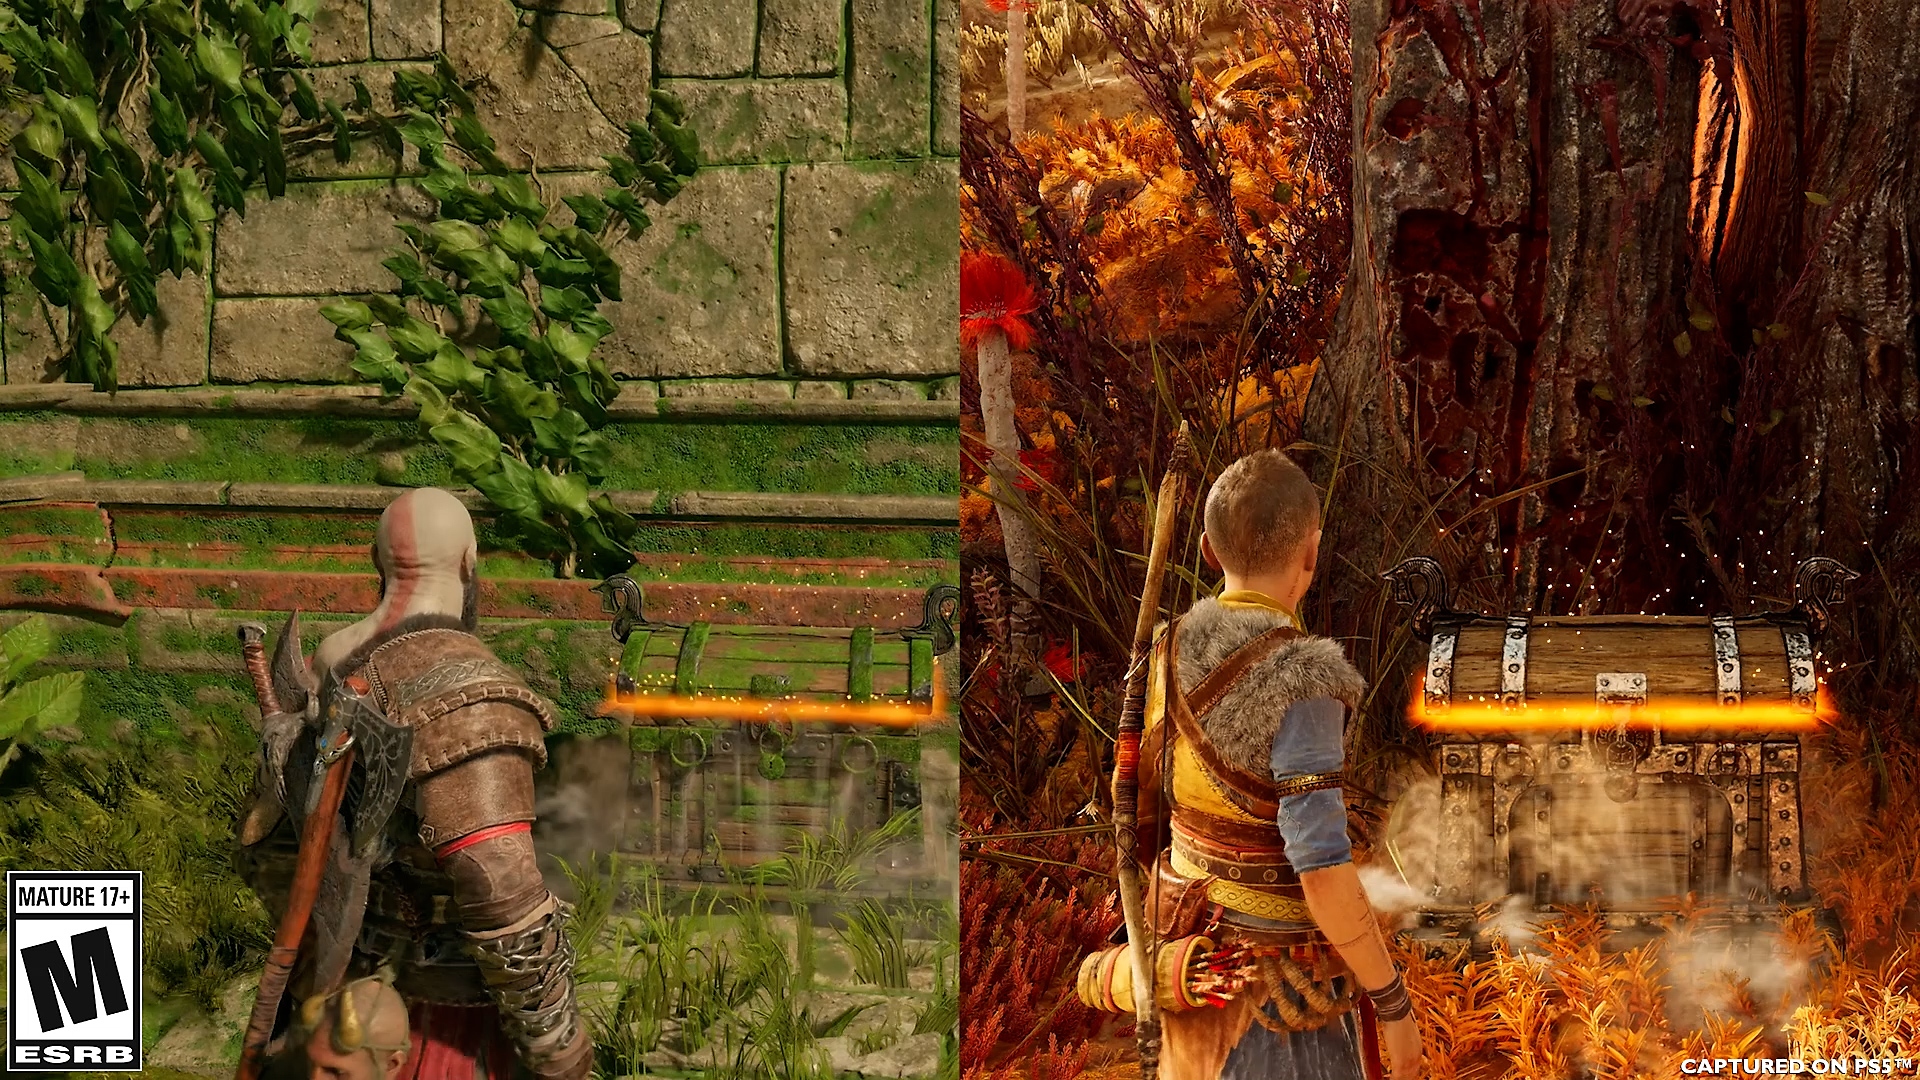 En animeret sammenligning mellem Atreus og Kratos' måde at åbne kister på i God of War Ragnarök.